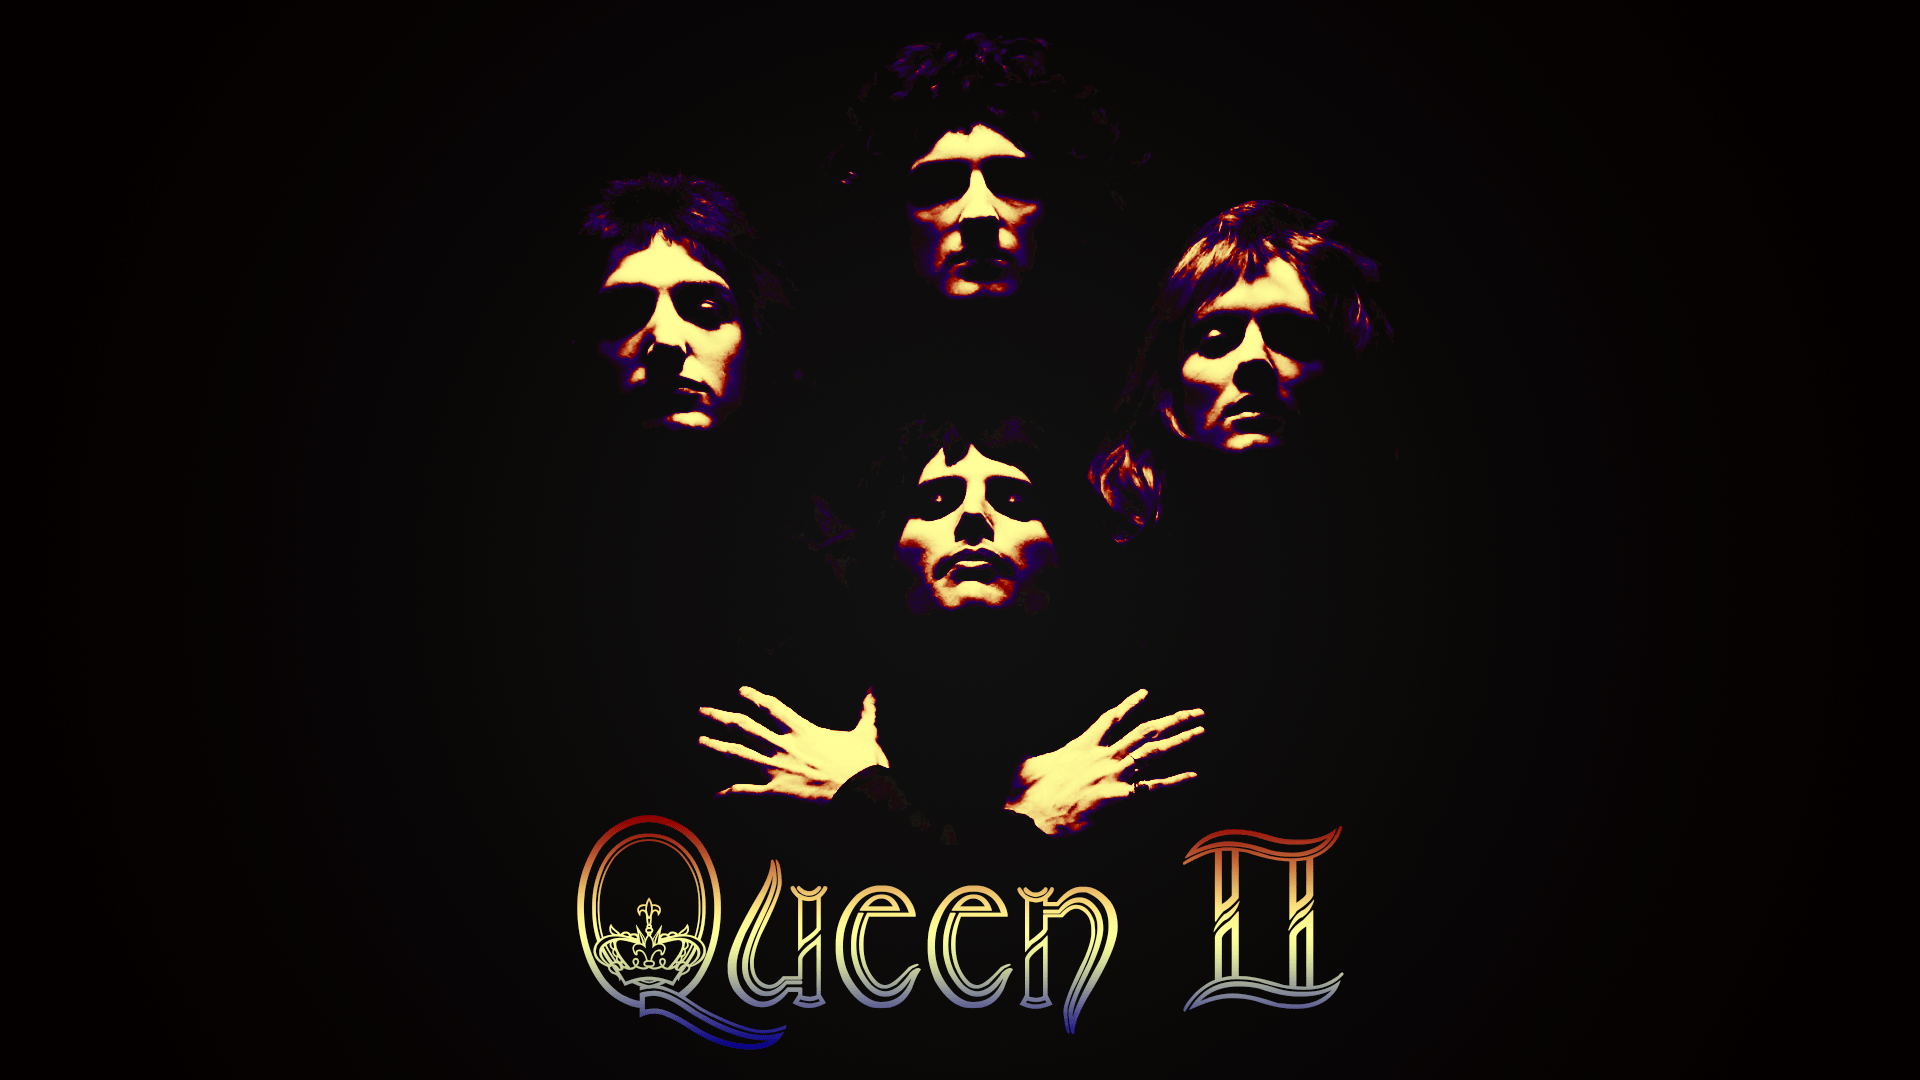 Queen II is the second studio album by the British rock band Queen, released in 1970. - 